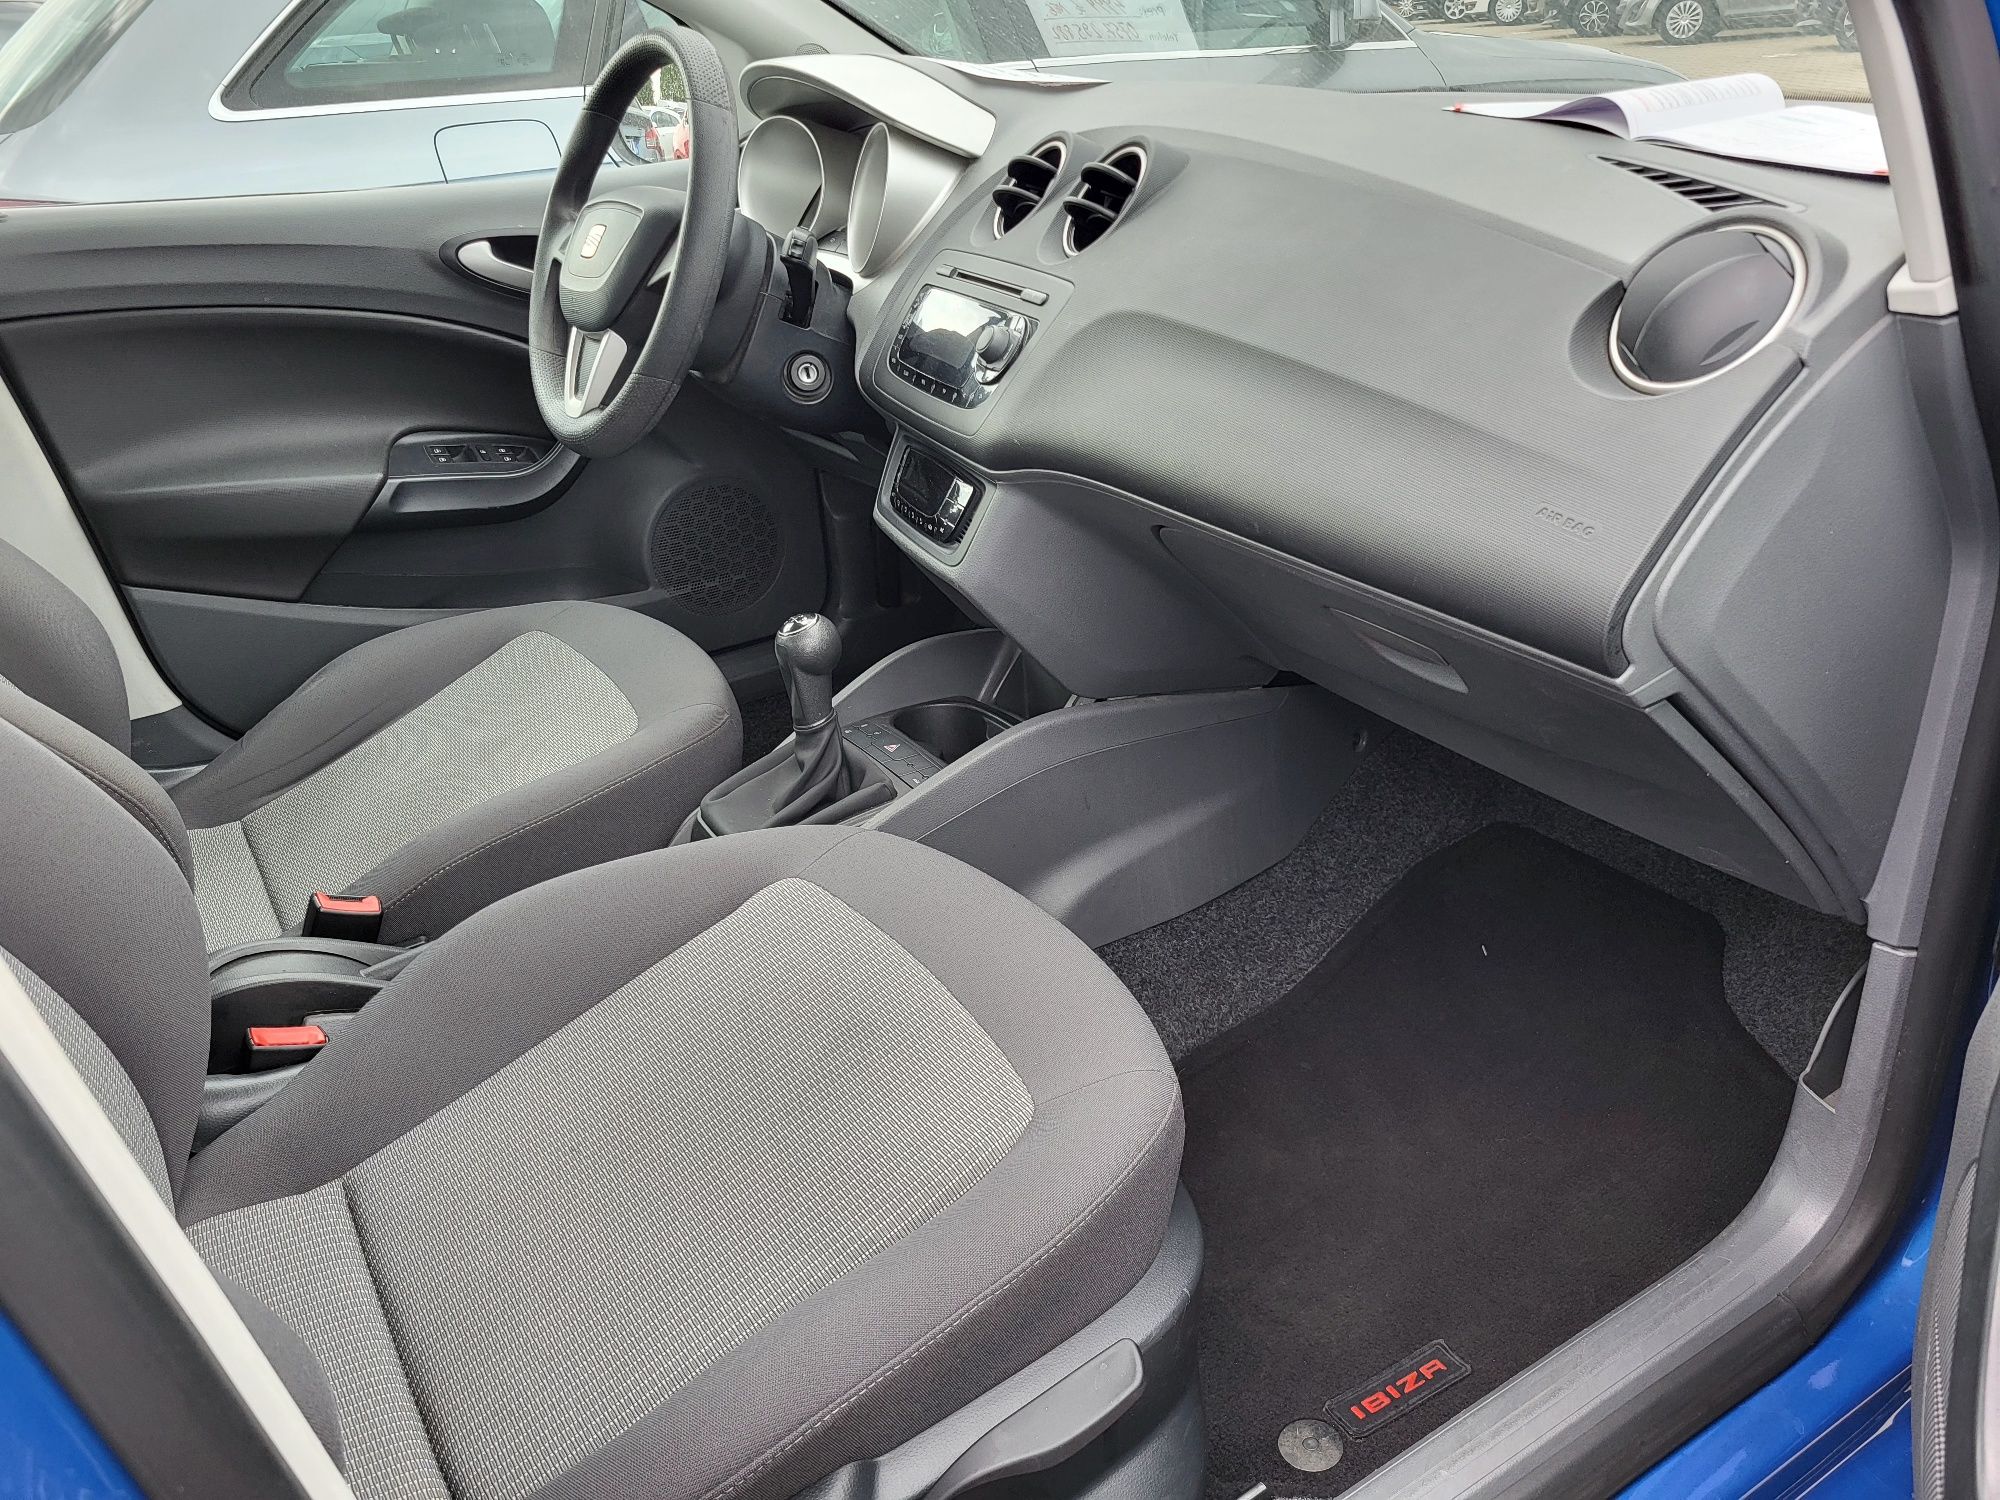 Seat Ibiza, motor 1,4 benzină-86 CP- euro 5